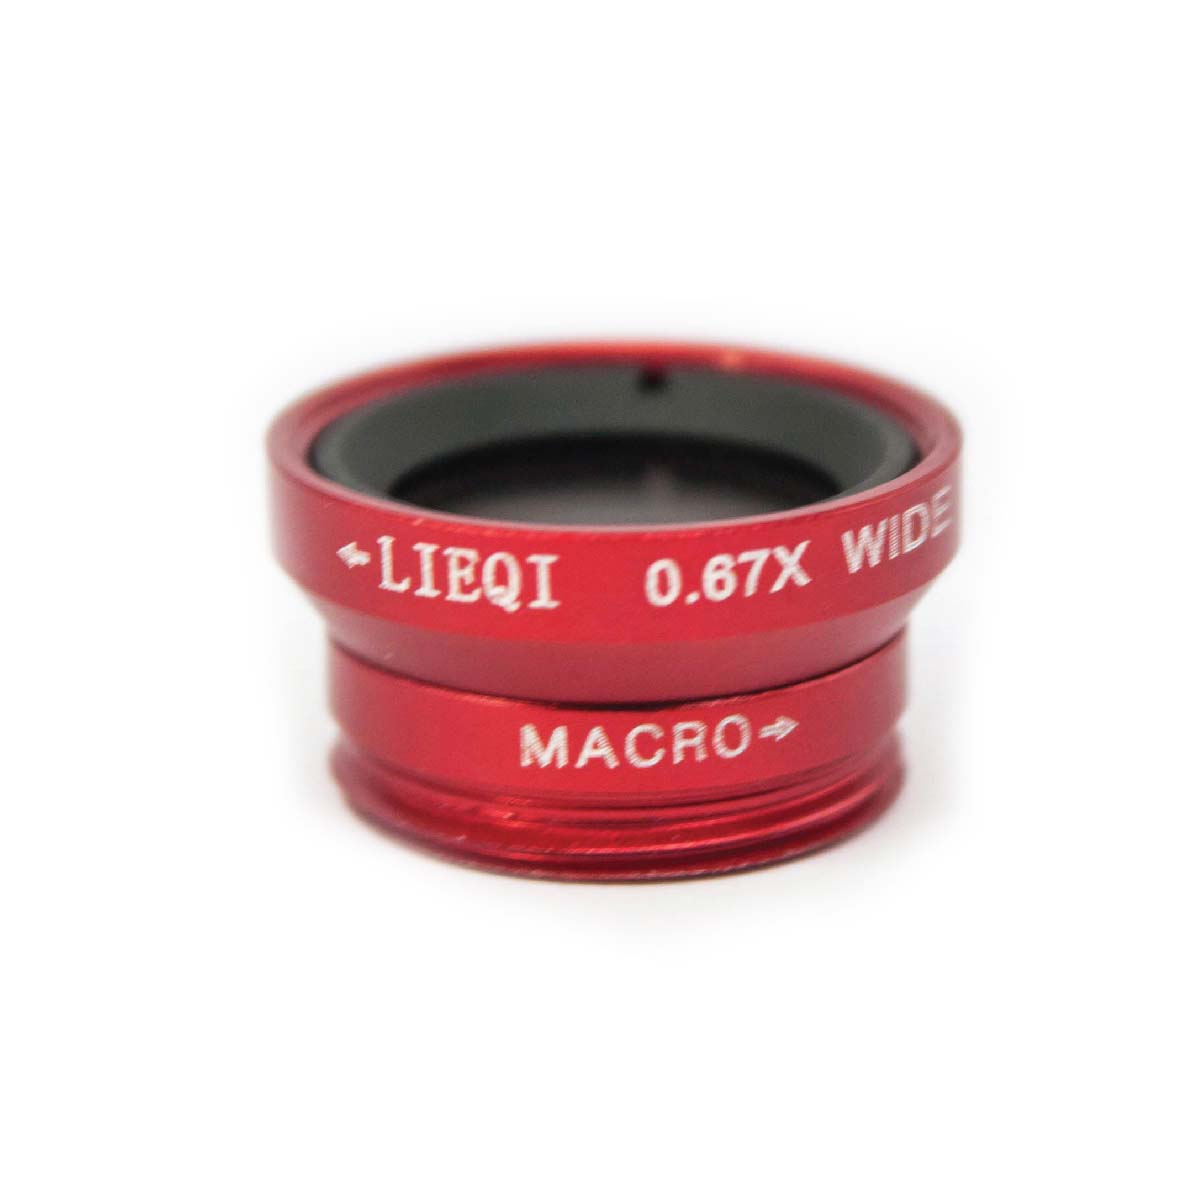 Universal Lomo Clip Lens ไม่ว่าจะ Wide Angle Lens ที่ถ่ายได้มุมกว้าง หรือ Macro Lens ถ่ายรูปในในระยะใกล้ ก็สวยได้ไม่แพ้กัน